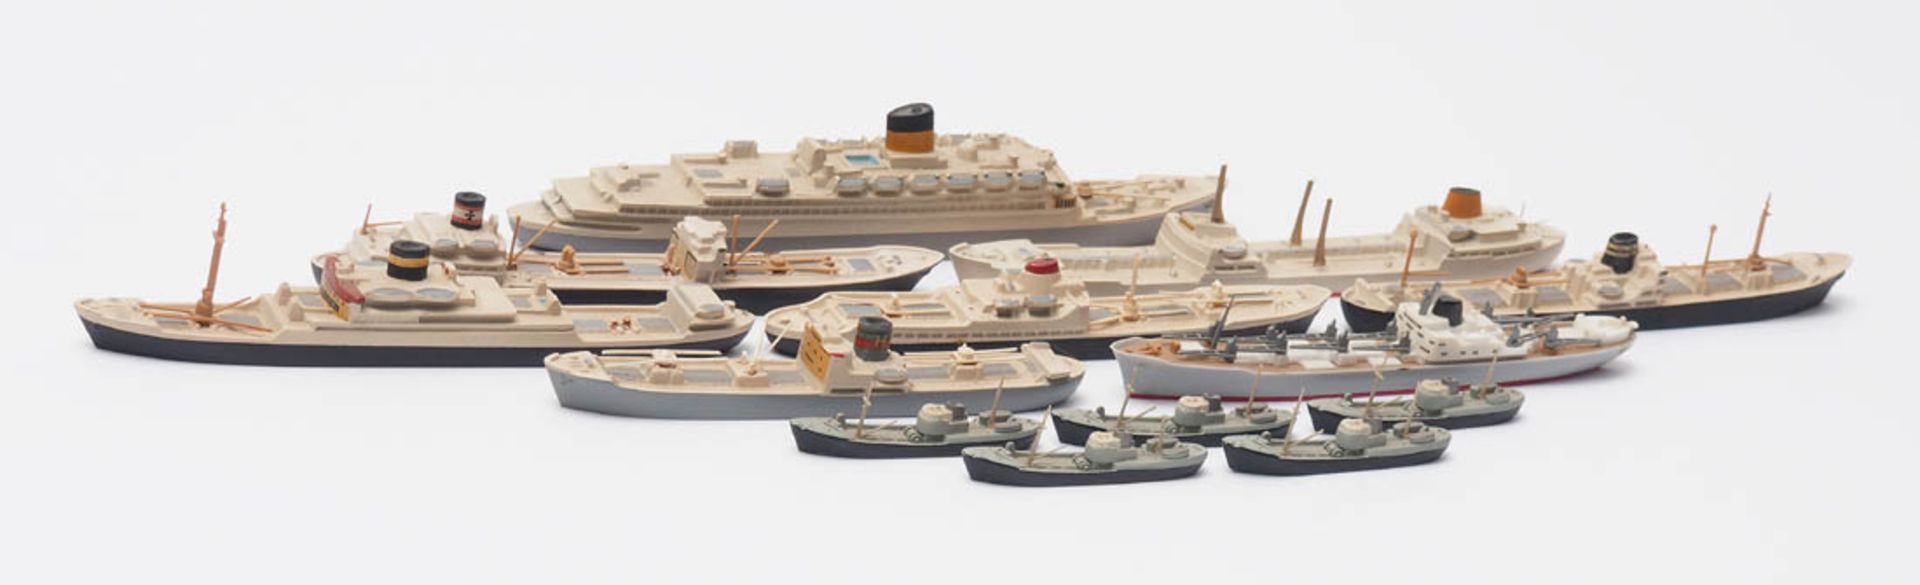 13 Schiffsmodelle, Wiking Passagierschiff, Tanker, Trawler etc. Zwölf aus Druckguss, eines aus